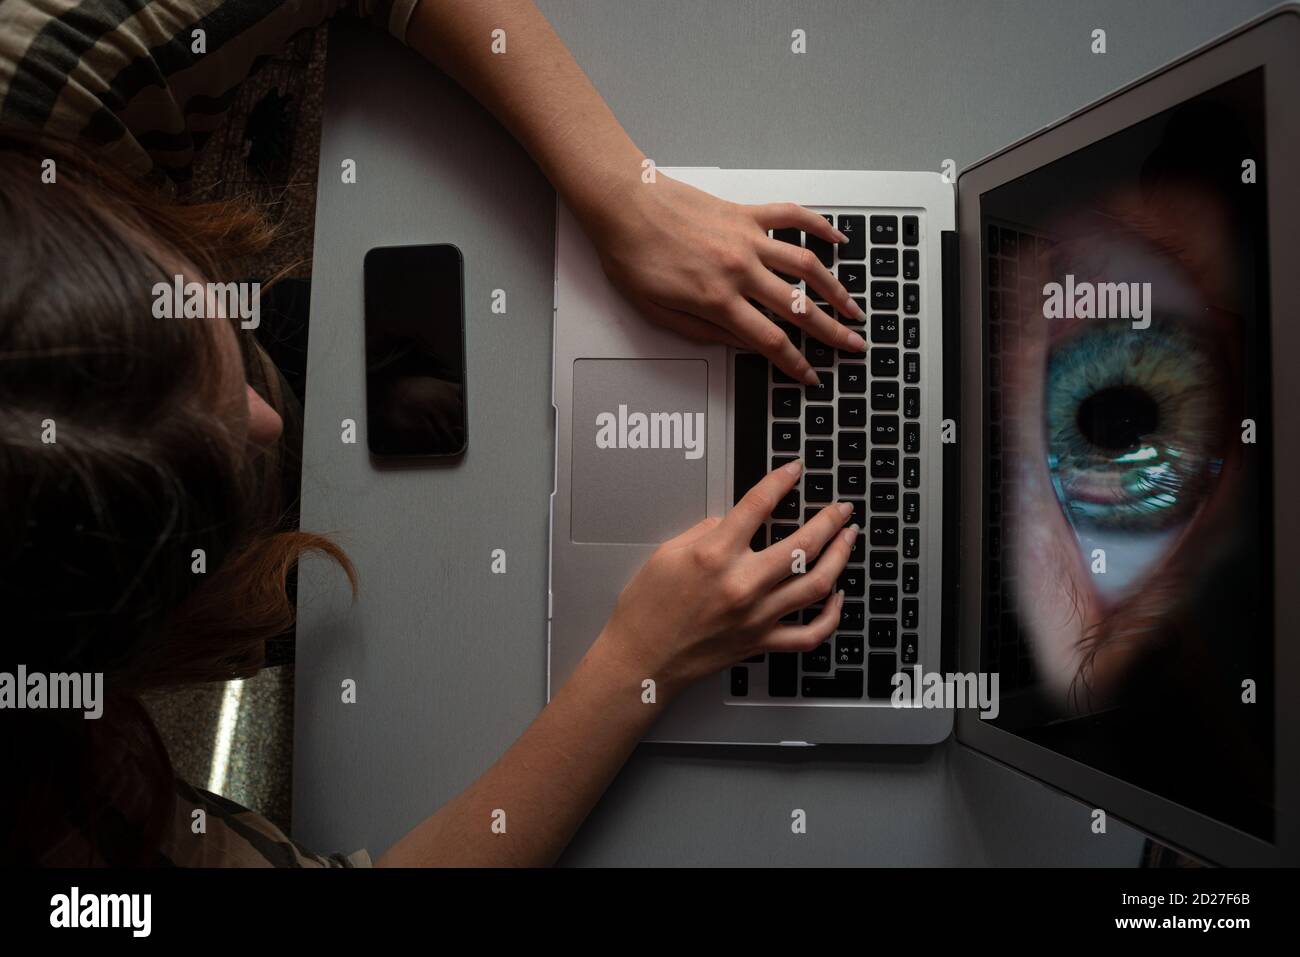 giovane donna che utilizza il computer per lo shopping o il lavoro infettato con spyware o malwear, grande occhio che guarda dallo schermo, concetto Foto Stock